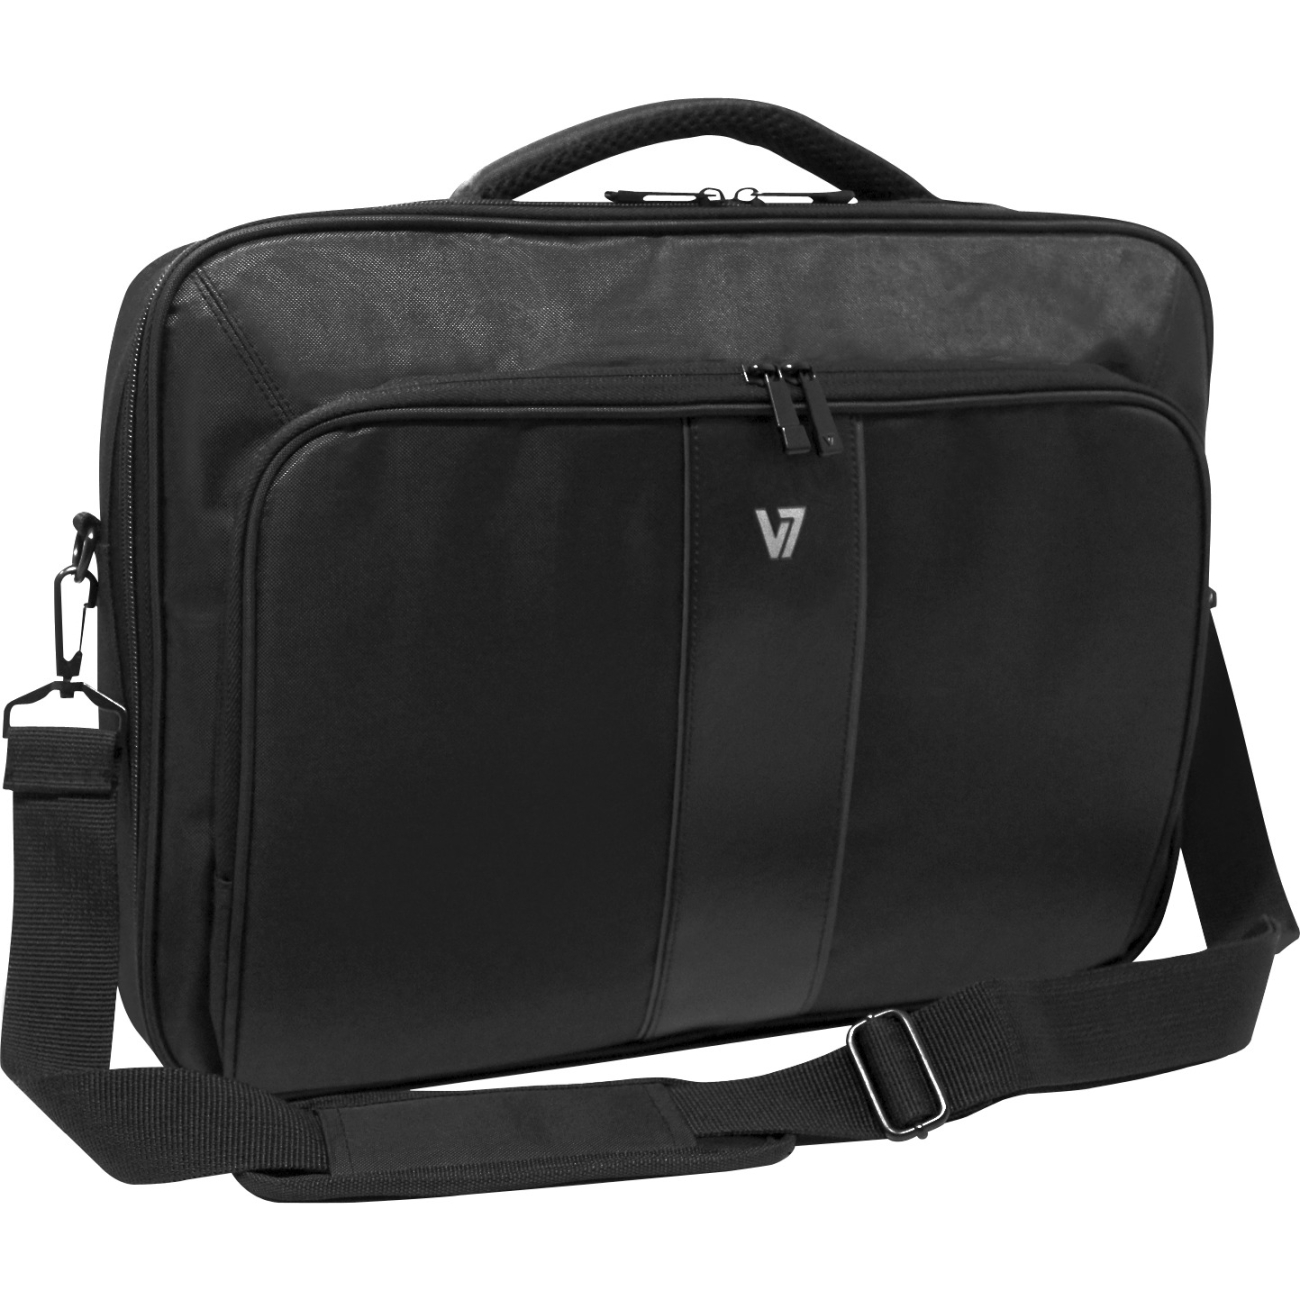 V7 Professional 2 Front-Loading 16" Laptop Case - image 2 of 6